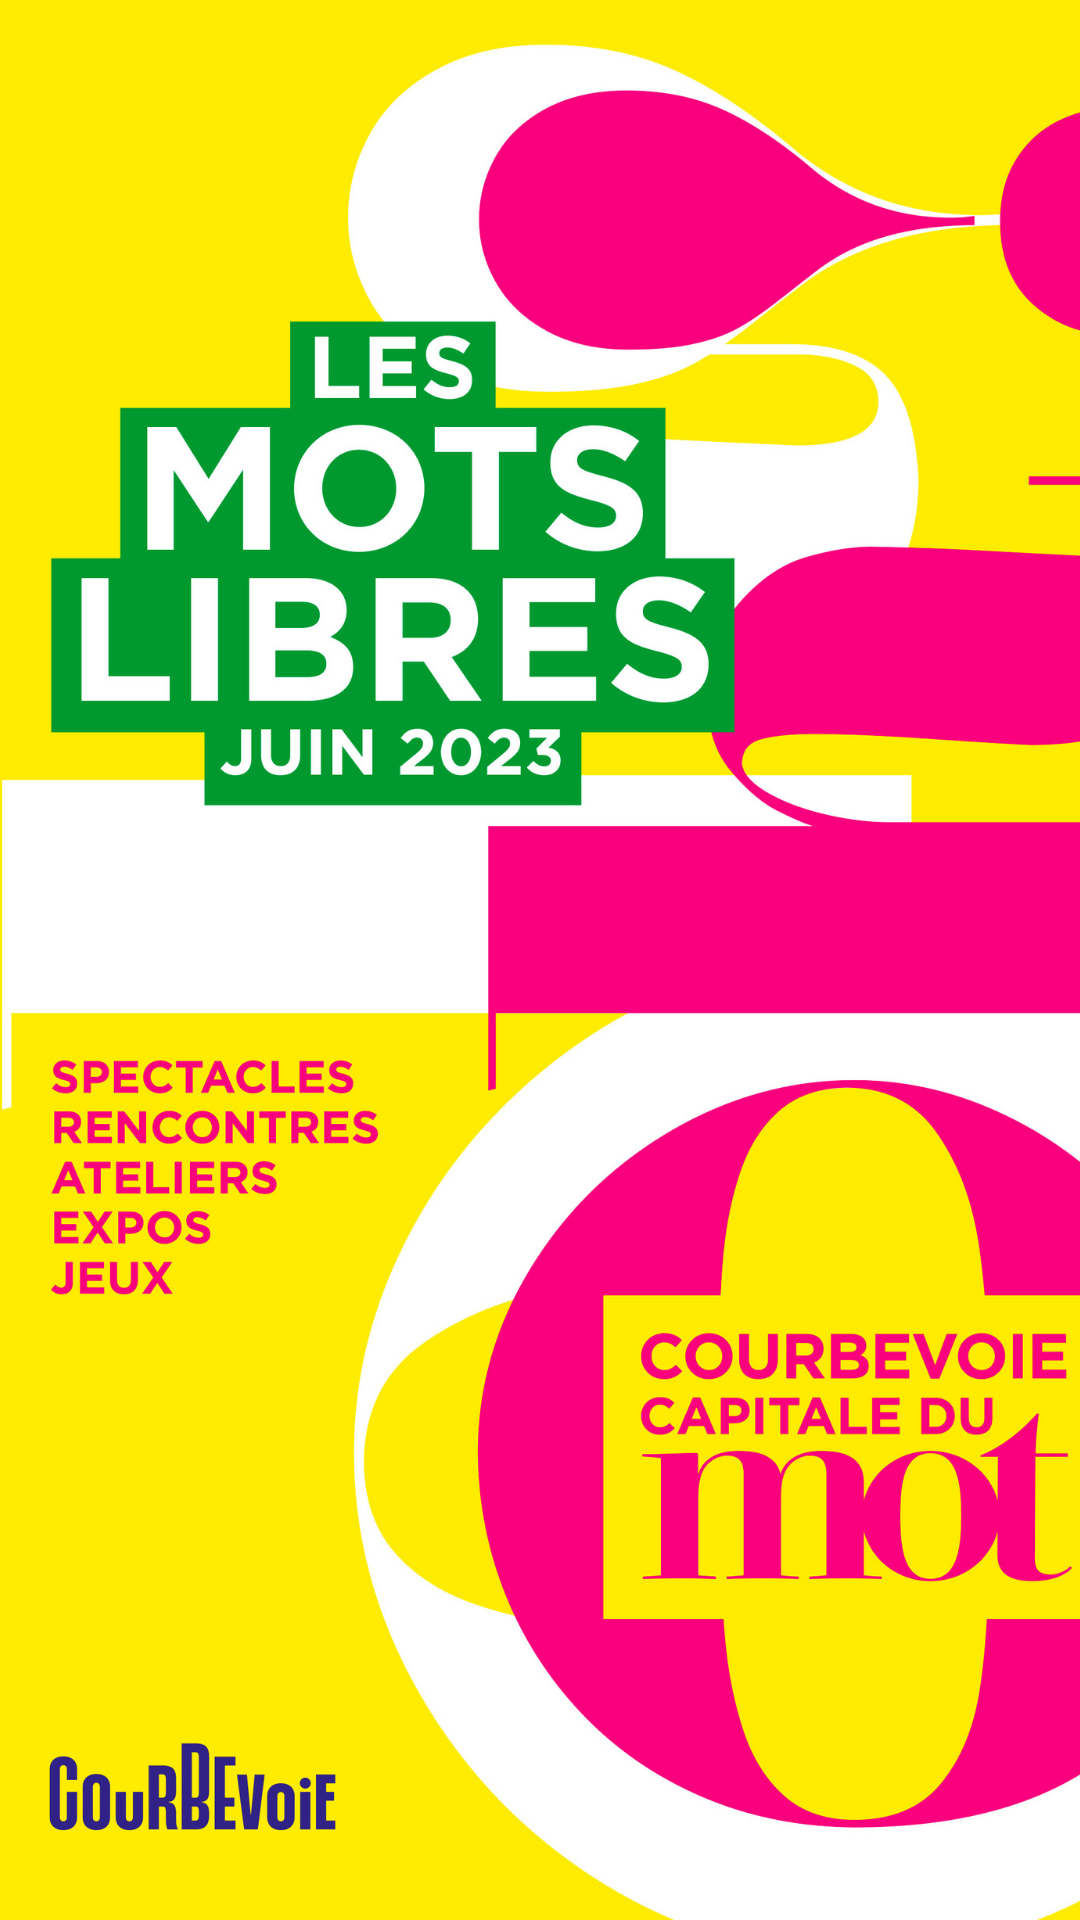 Le festival Les Mots Libres de Courbevoie aura lieu en juin, retrouvez les informations sur sortiracourbevoie.fr